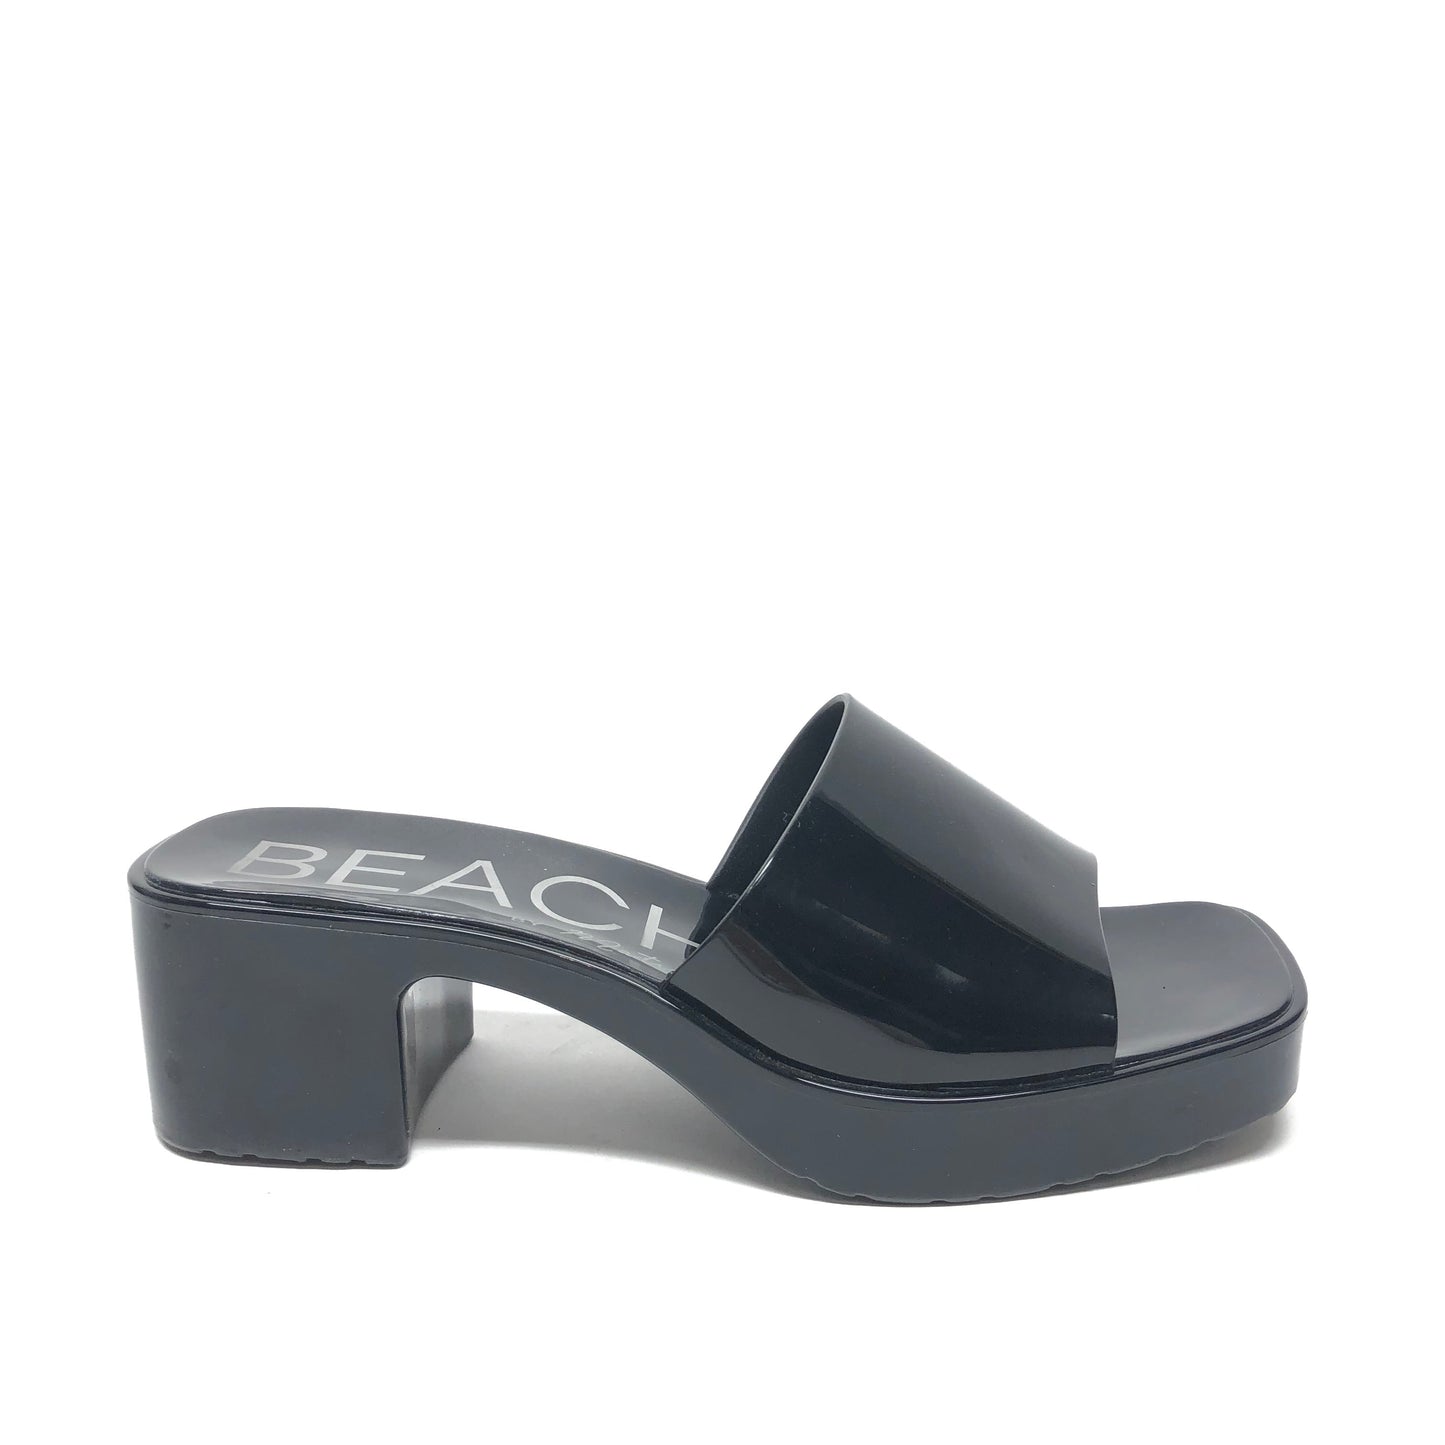 Black Sandals Heels Block Matisse, Size 8